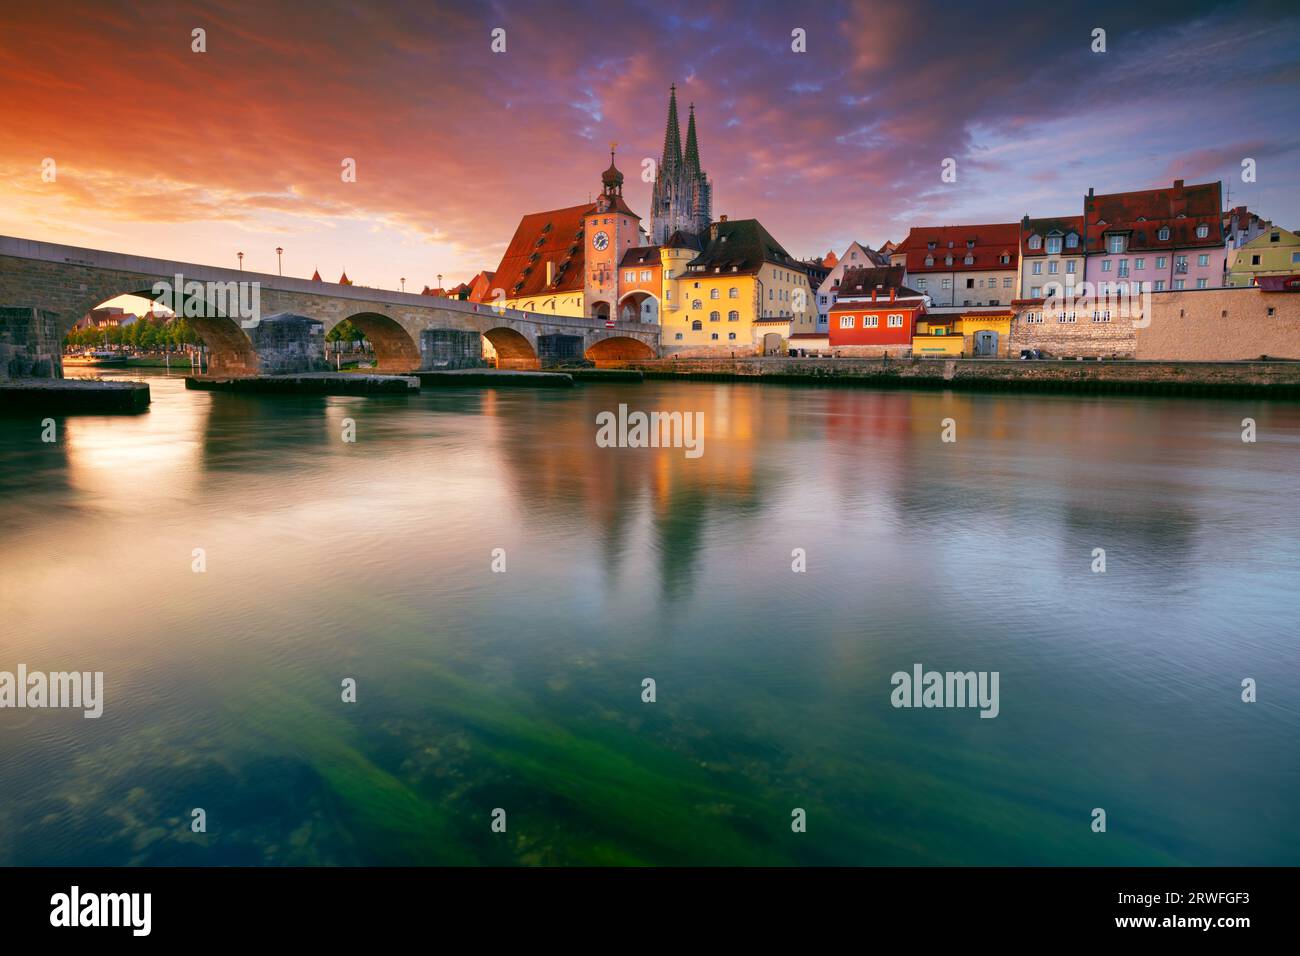 Regensburg, Deutschland. Stadtbild von Regensburg, Deutschland mit alter Steinbrücke über Donau und St. Peter Kathedrale bei Herbstsonnenaufgang. Stockfoto